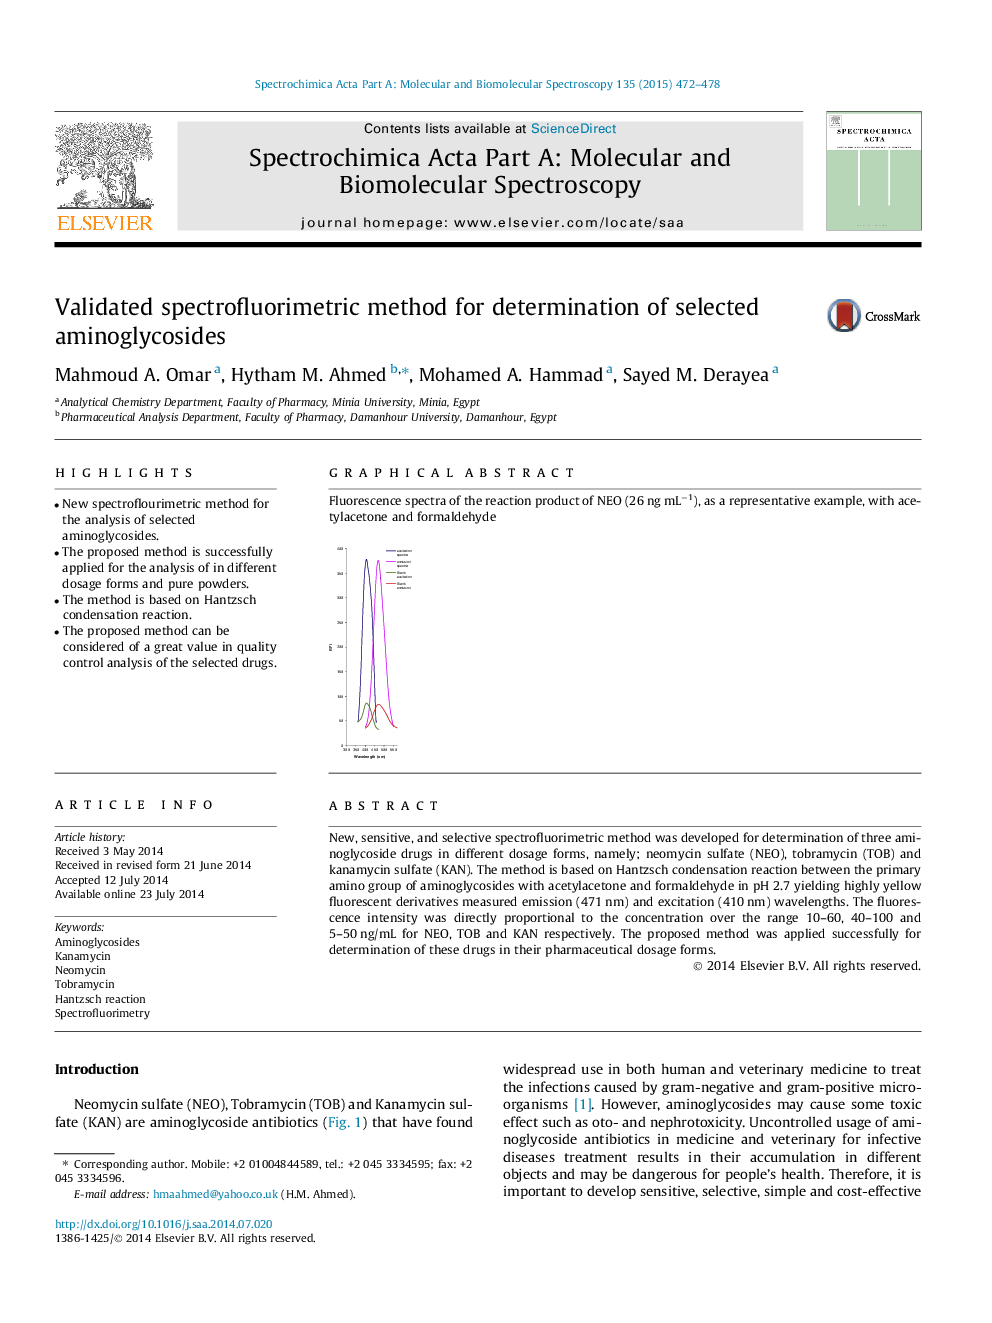 Validated spectrofluorimetric method for determination of selected aminoglycosides